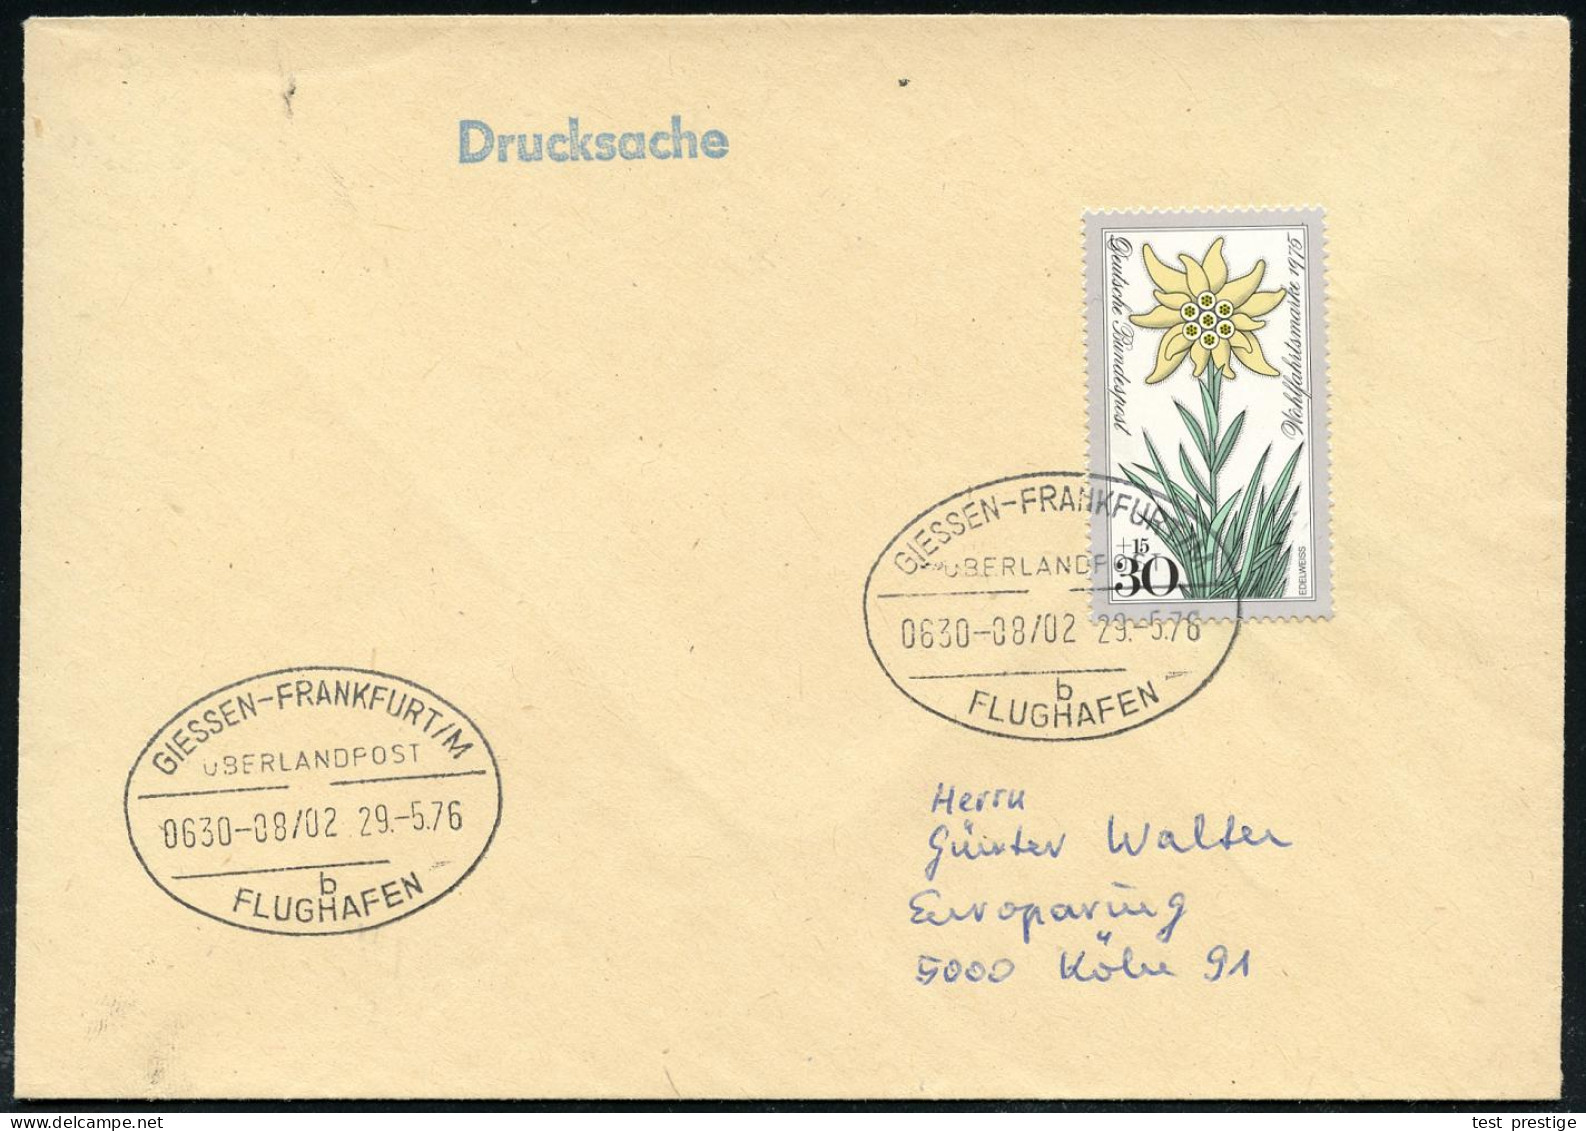 GIESSEN-FRANKFURT/ M/ ÜBERLANDPOST/ 0630-08/ 02/ B/ FLUGHAFEN 1976 (29.5.) Oval-St. = Mobiles Postamt Im Überland-Postom - Voitures